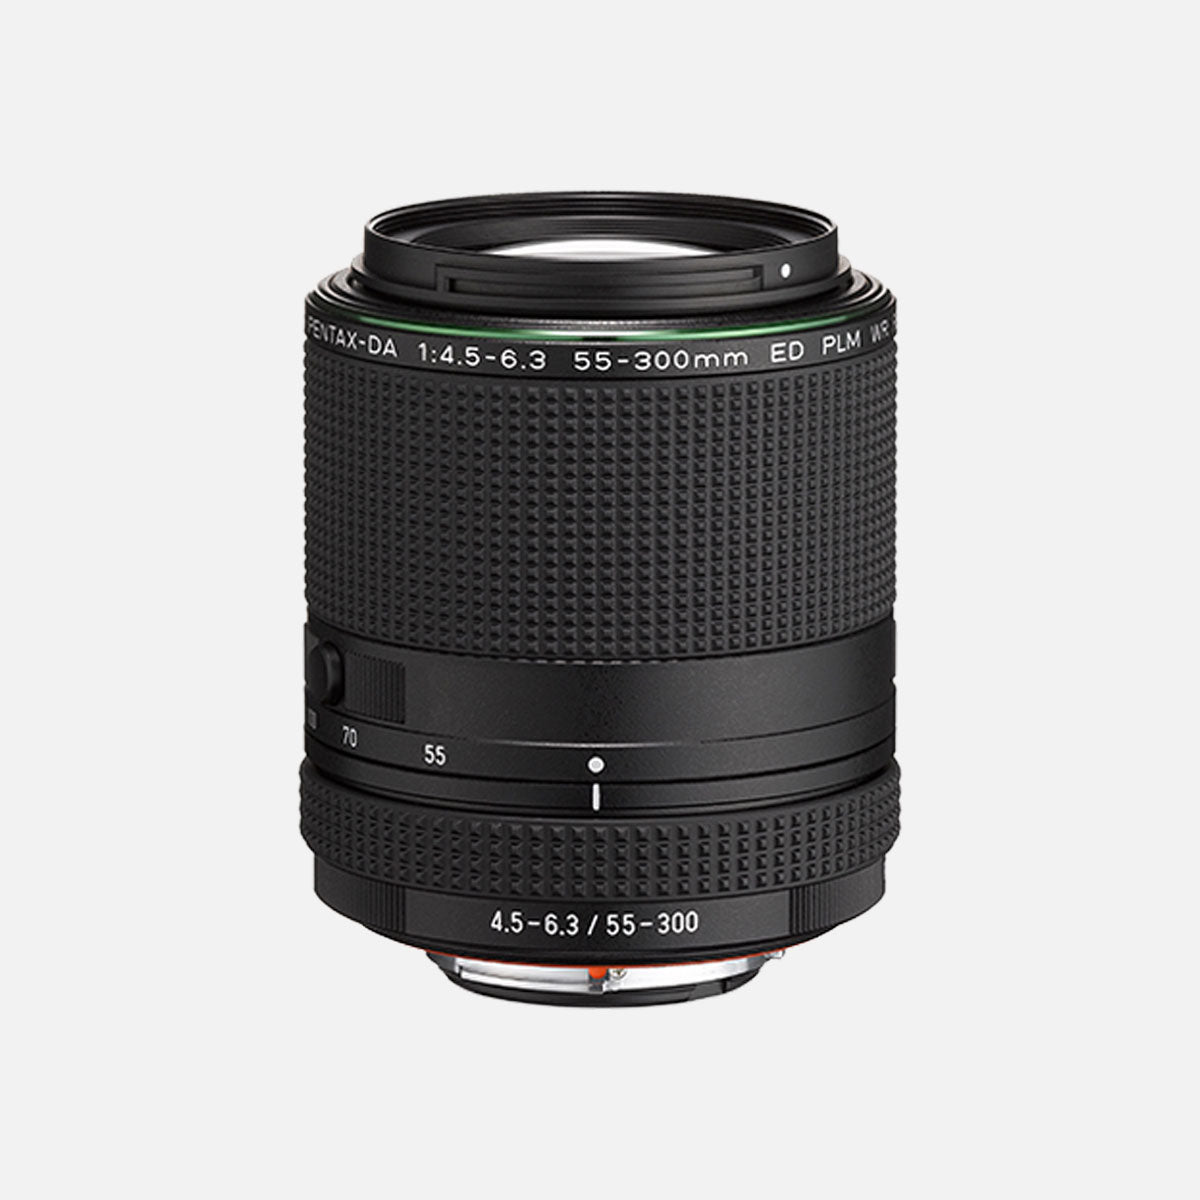 PENTAX APS-C Lens | HD PENTAX-DA 55-300mmF4.5-6.3ED PLM WR RE